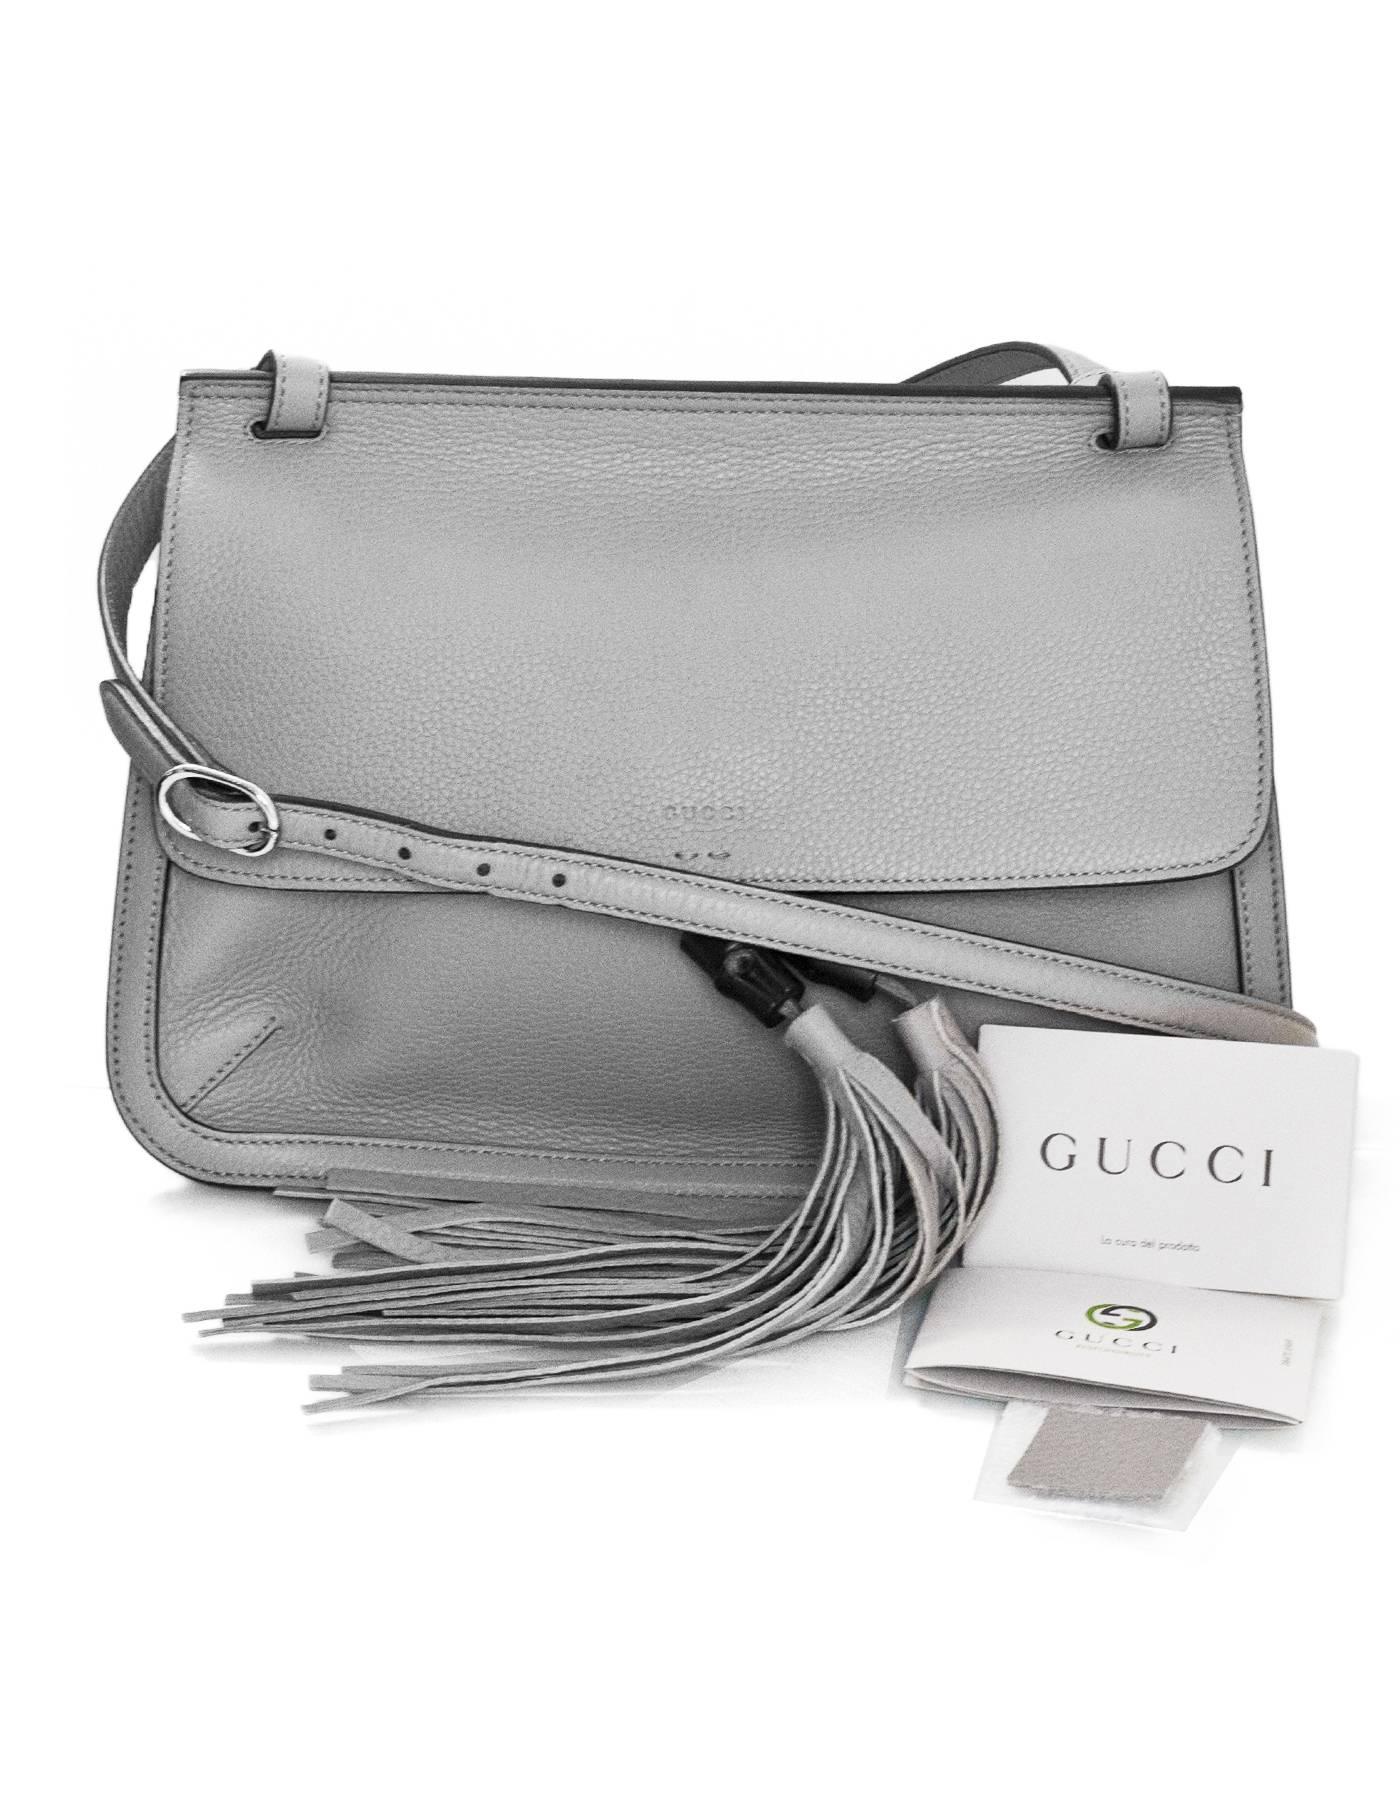 Gucci Light Grey Calfskin Medium Bamboo Daily Flap Bag 3